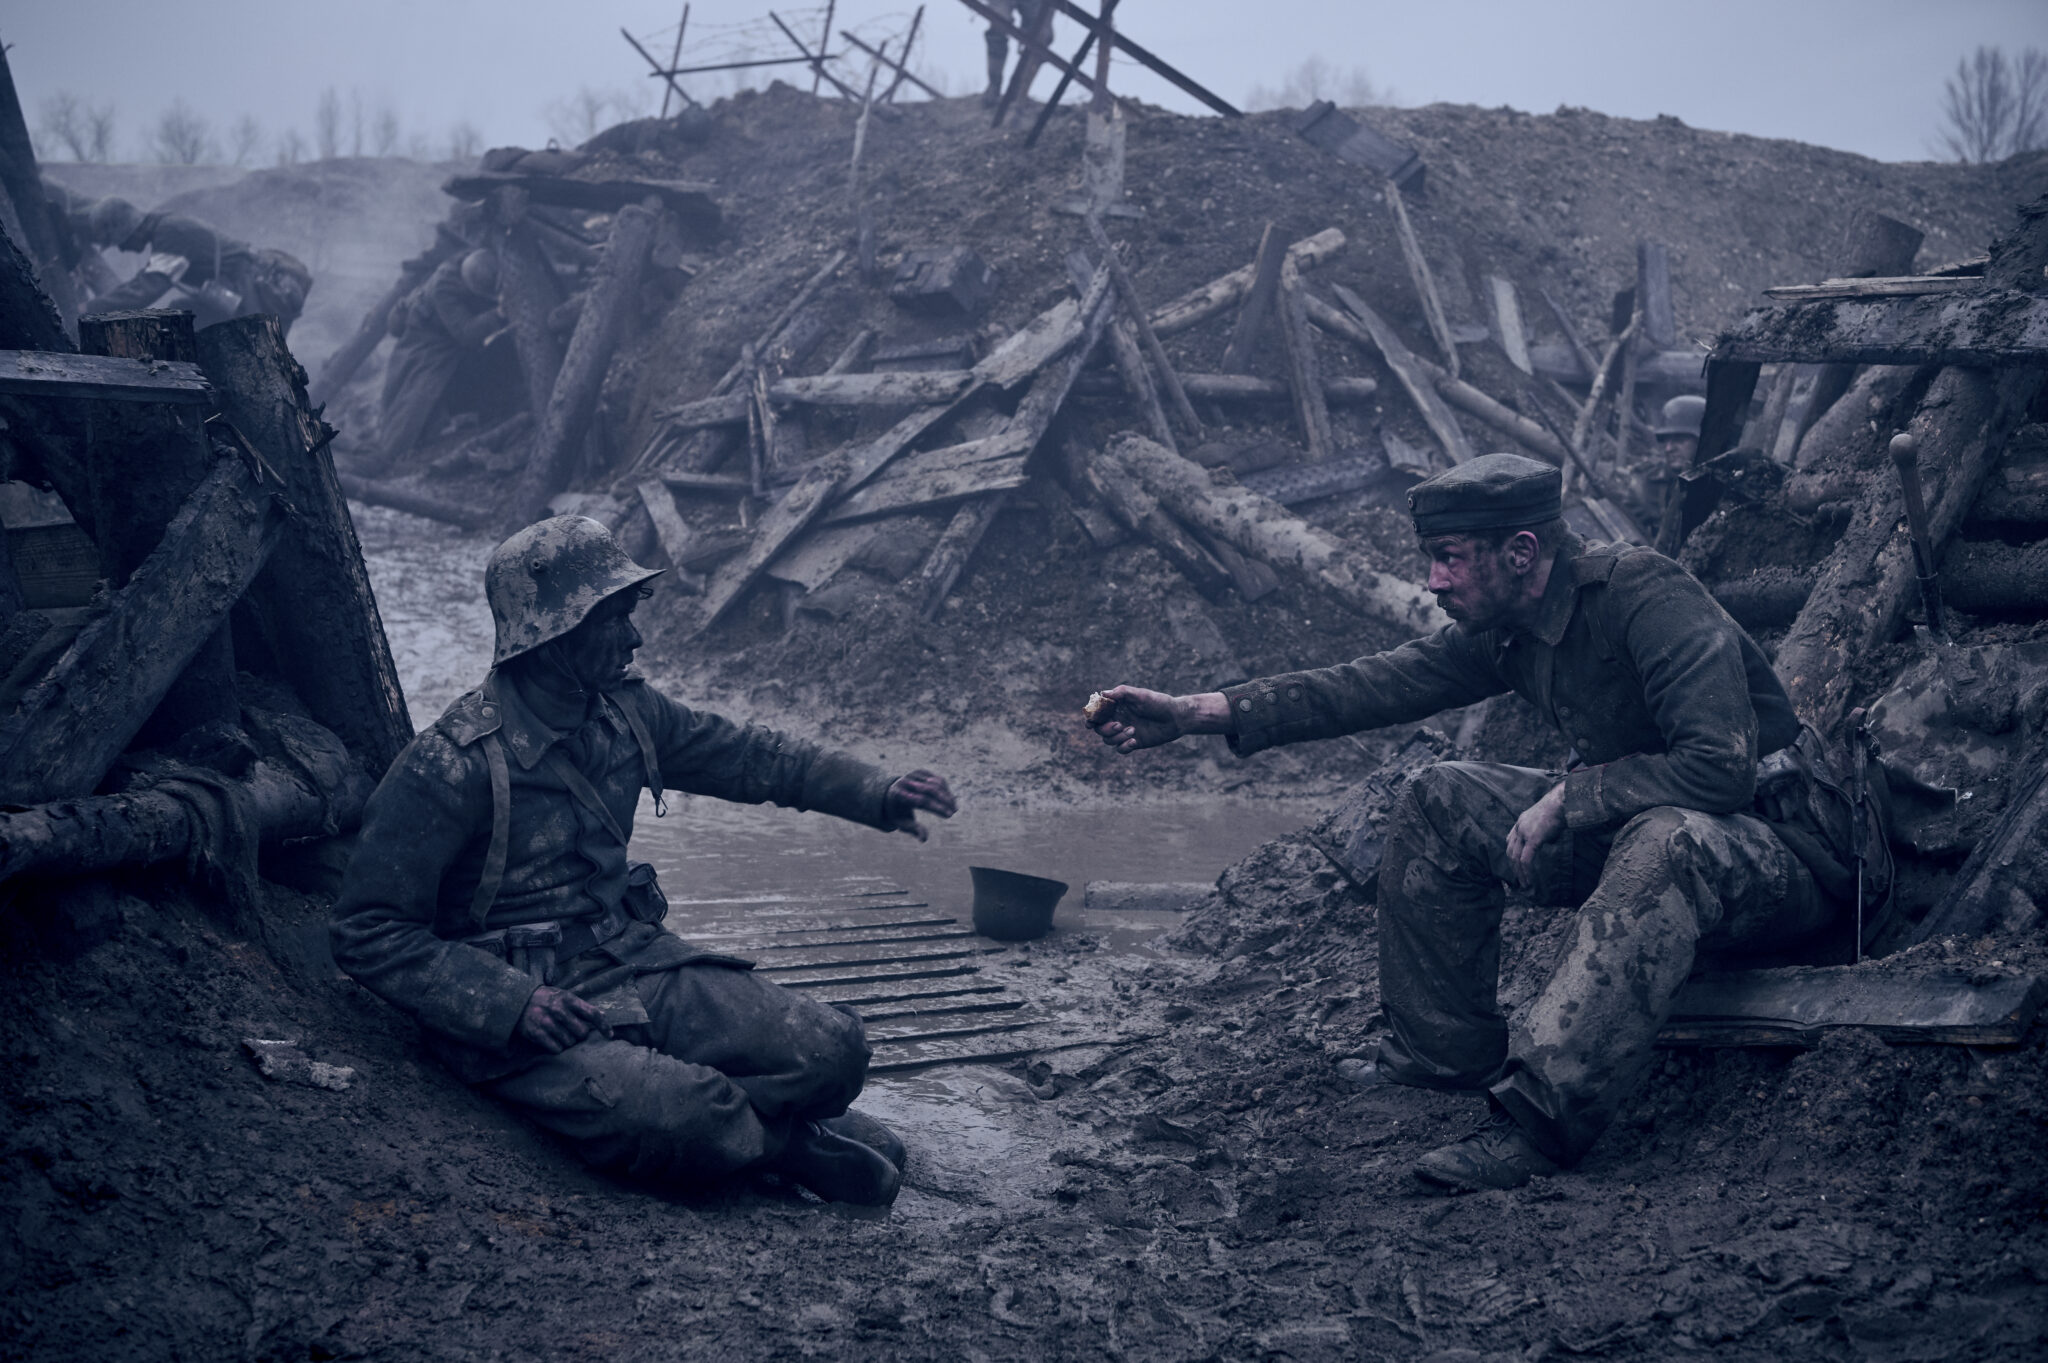 Ein Schützengraben in dem sich zwei Soldaten die Arme entgegenstrecken. Beide sind voller Dreck.